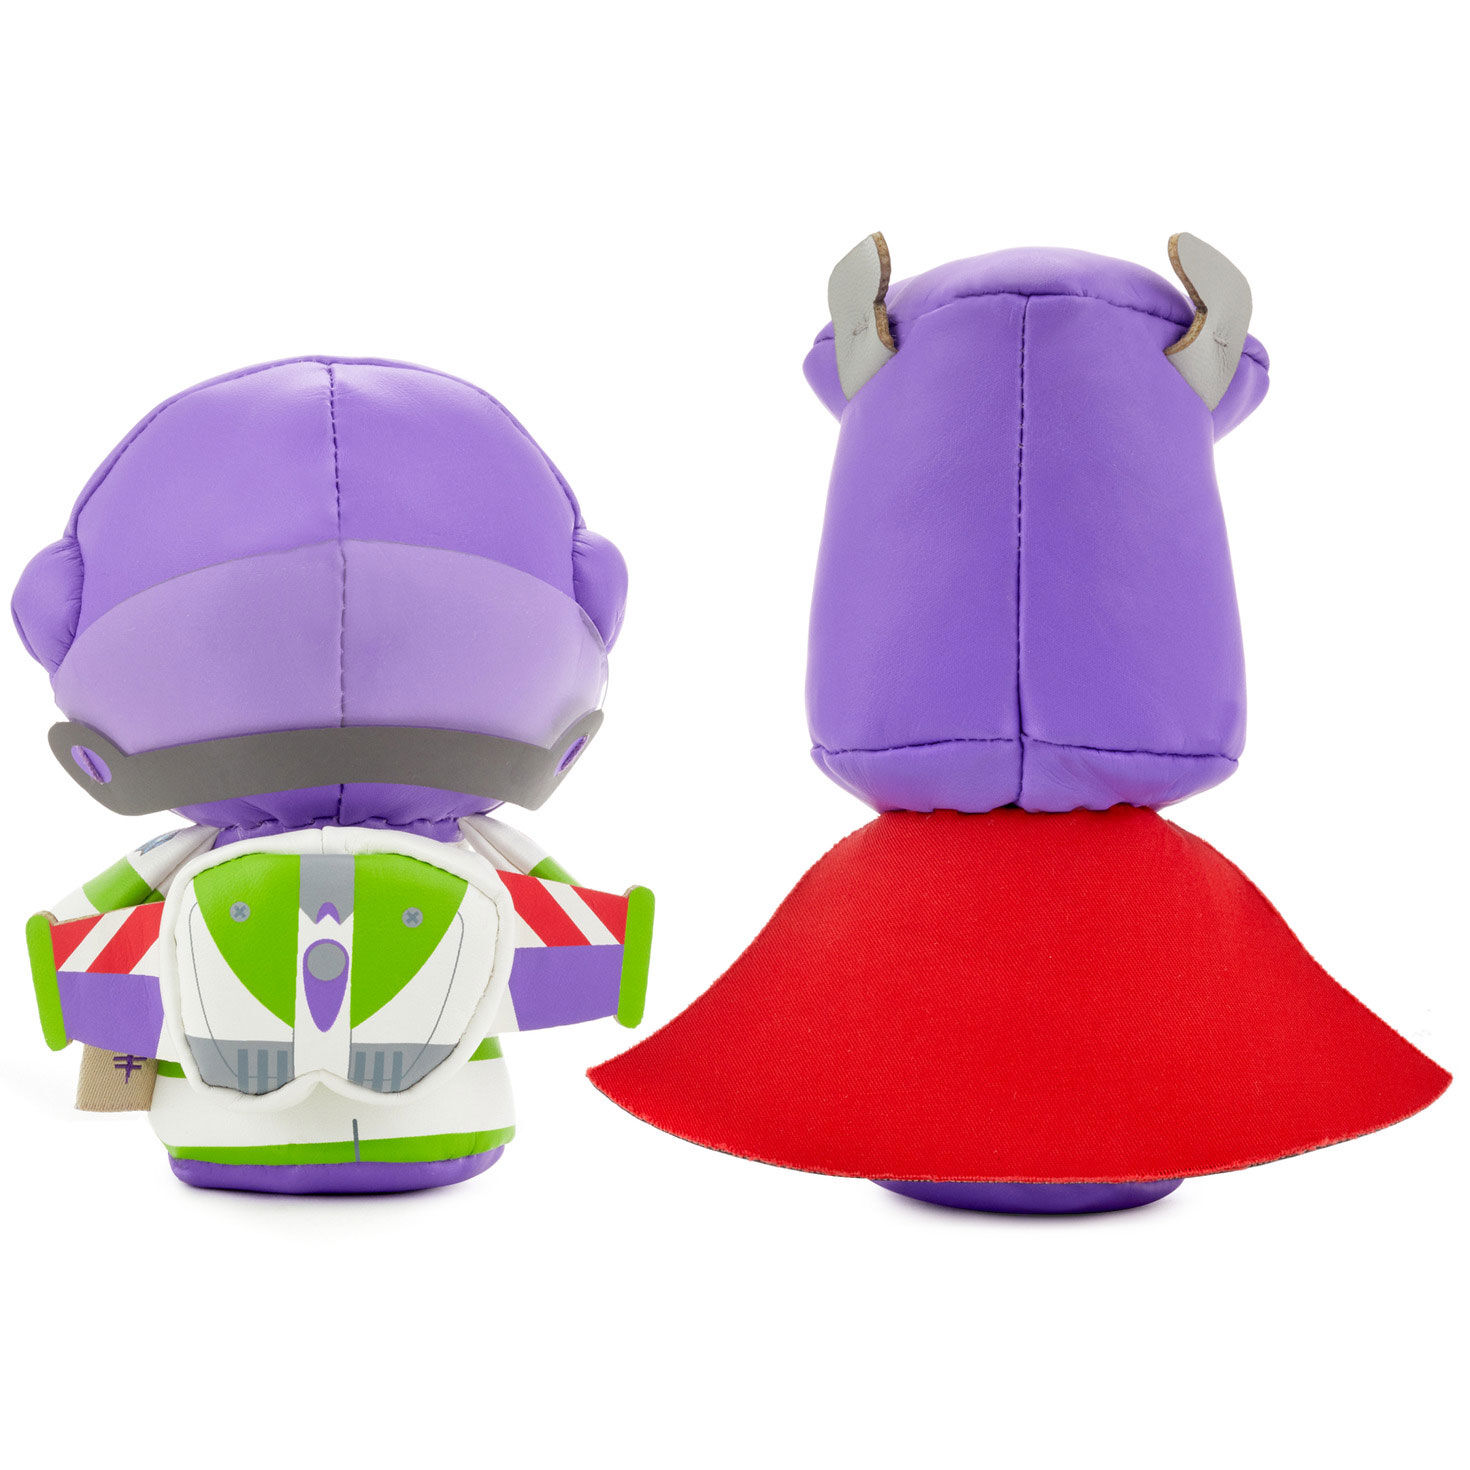 Hallmark Itty Bittys Disney Pixar Toy Story Buzz Lightyear for sale online 